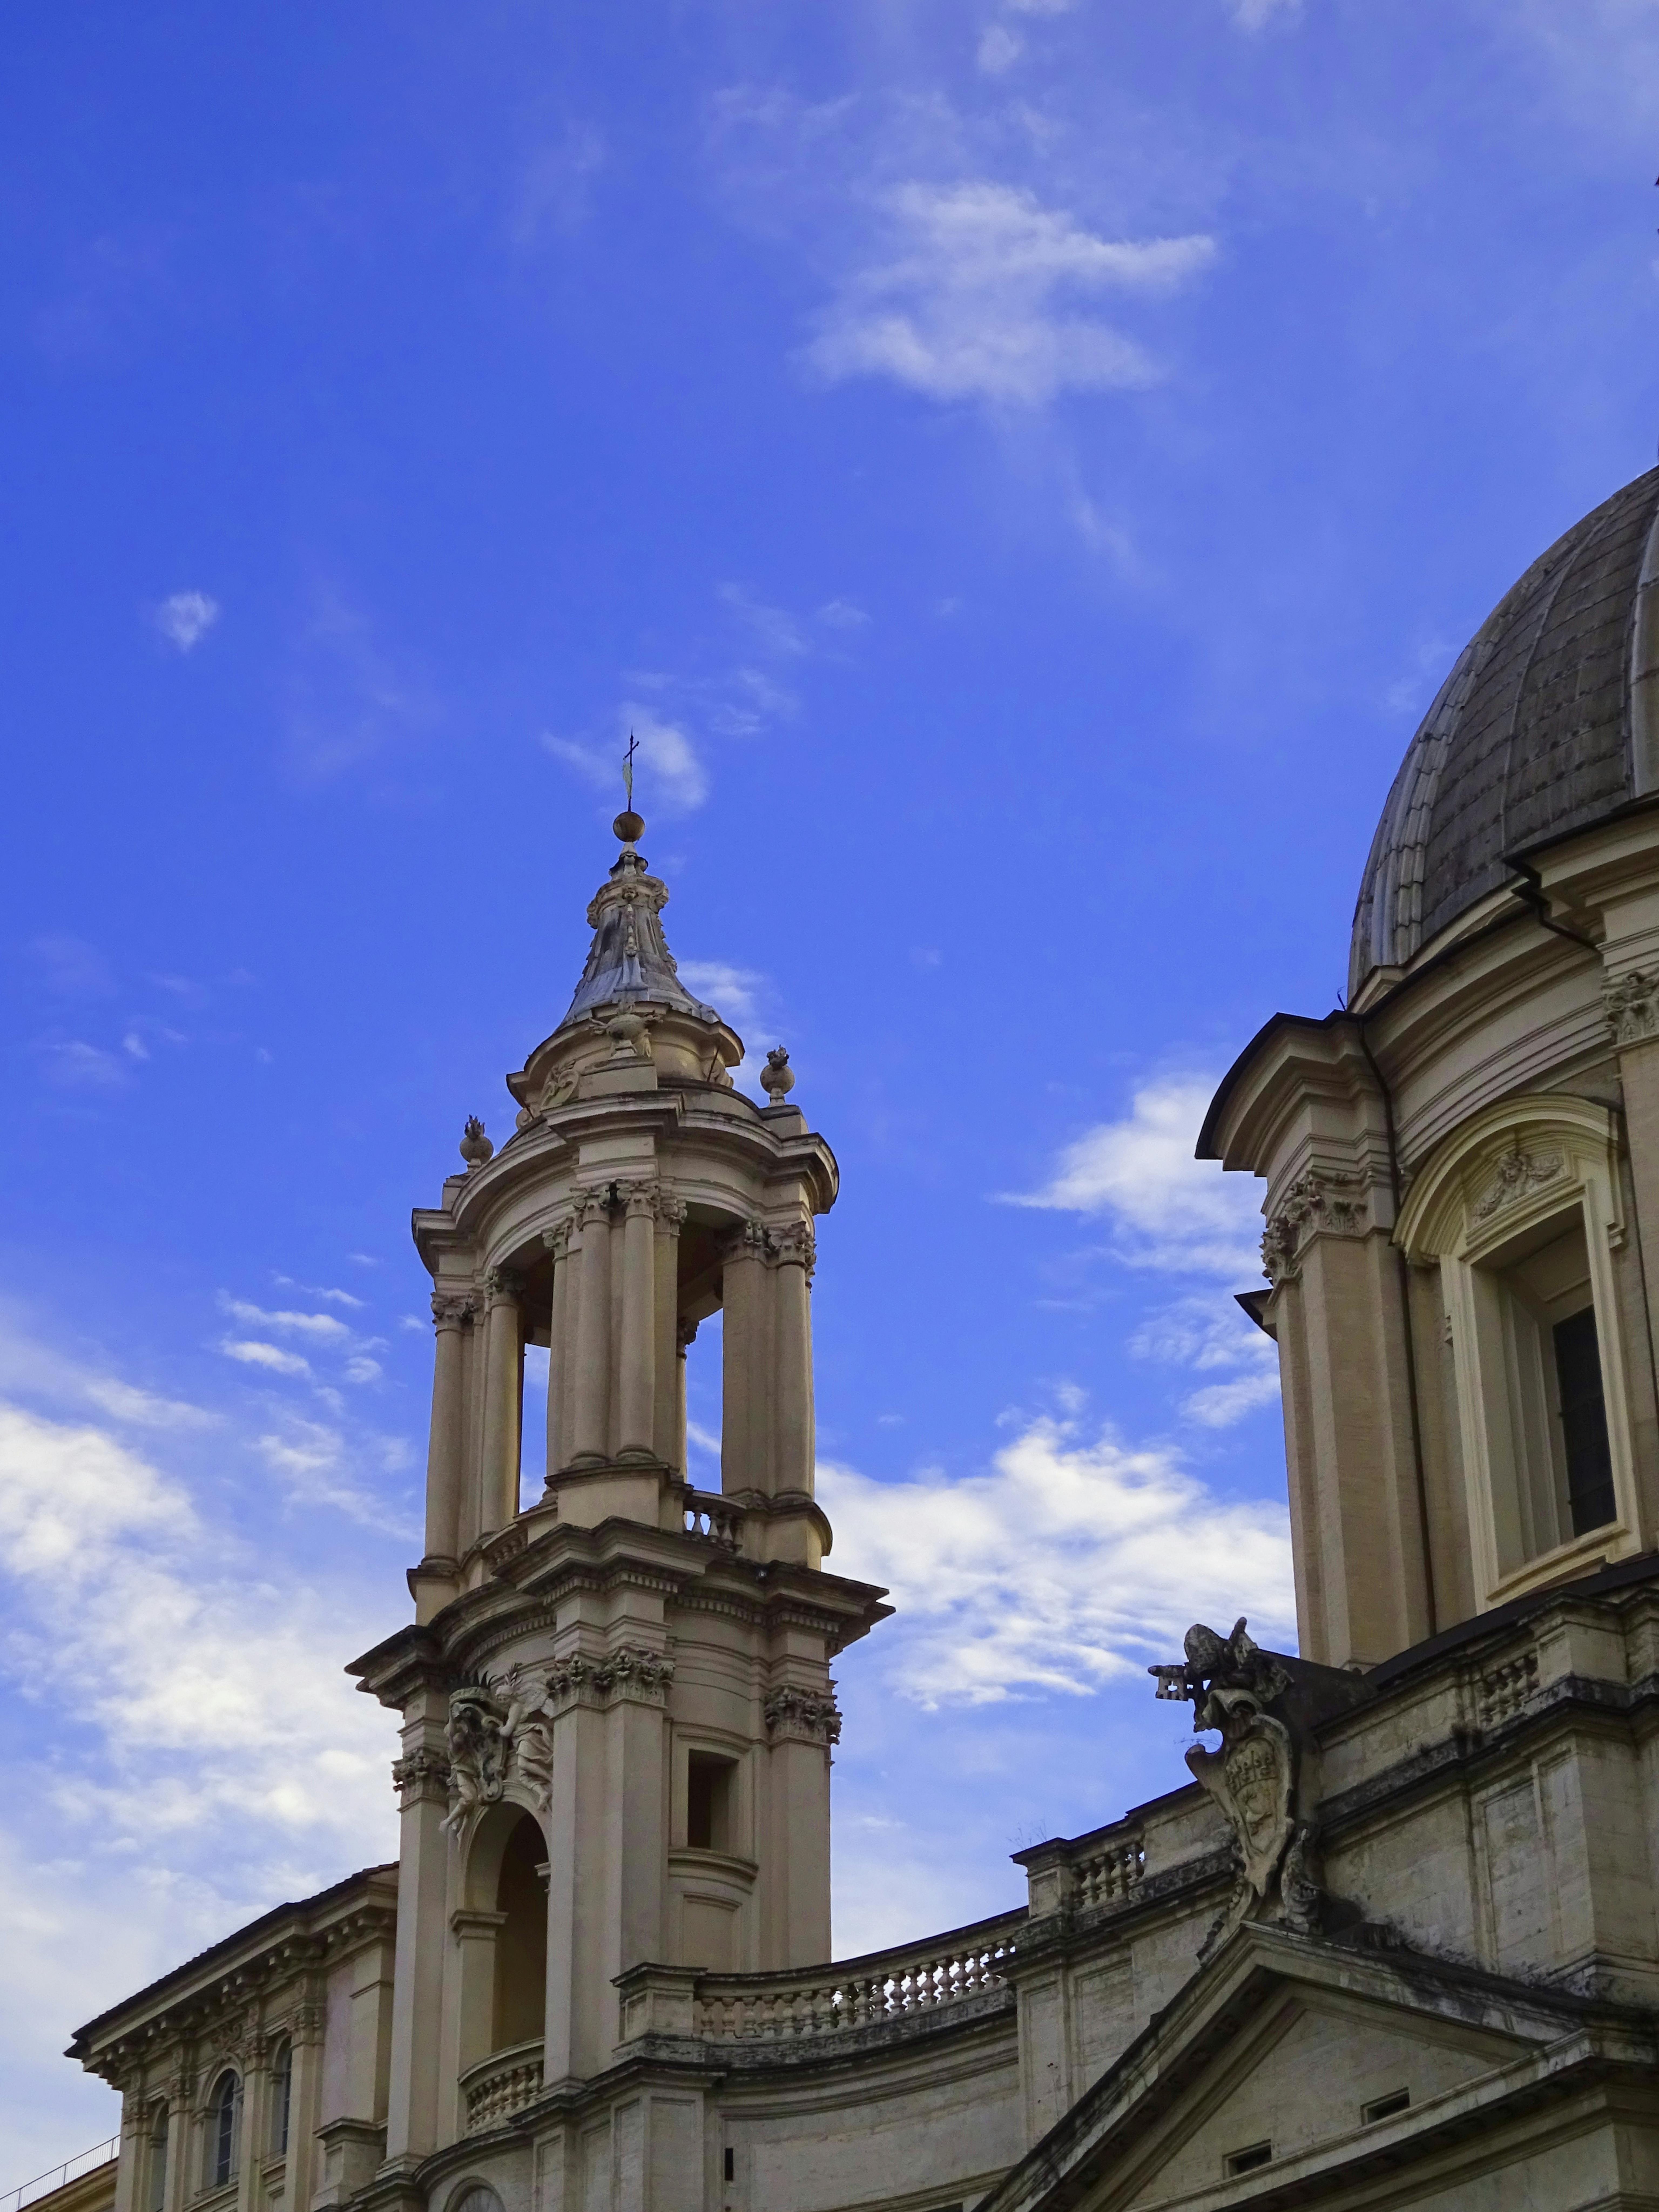 Foto scattata da Nika della cattedrale sullo sfondo di un cielo limpido: . “Per me – dice – è la speranza di ritrovare quello stesso cielo limpido quando riuscirò a tornare a casa”.